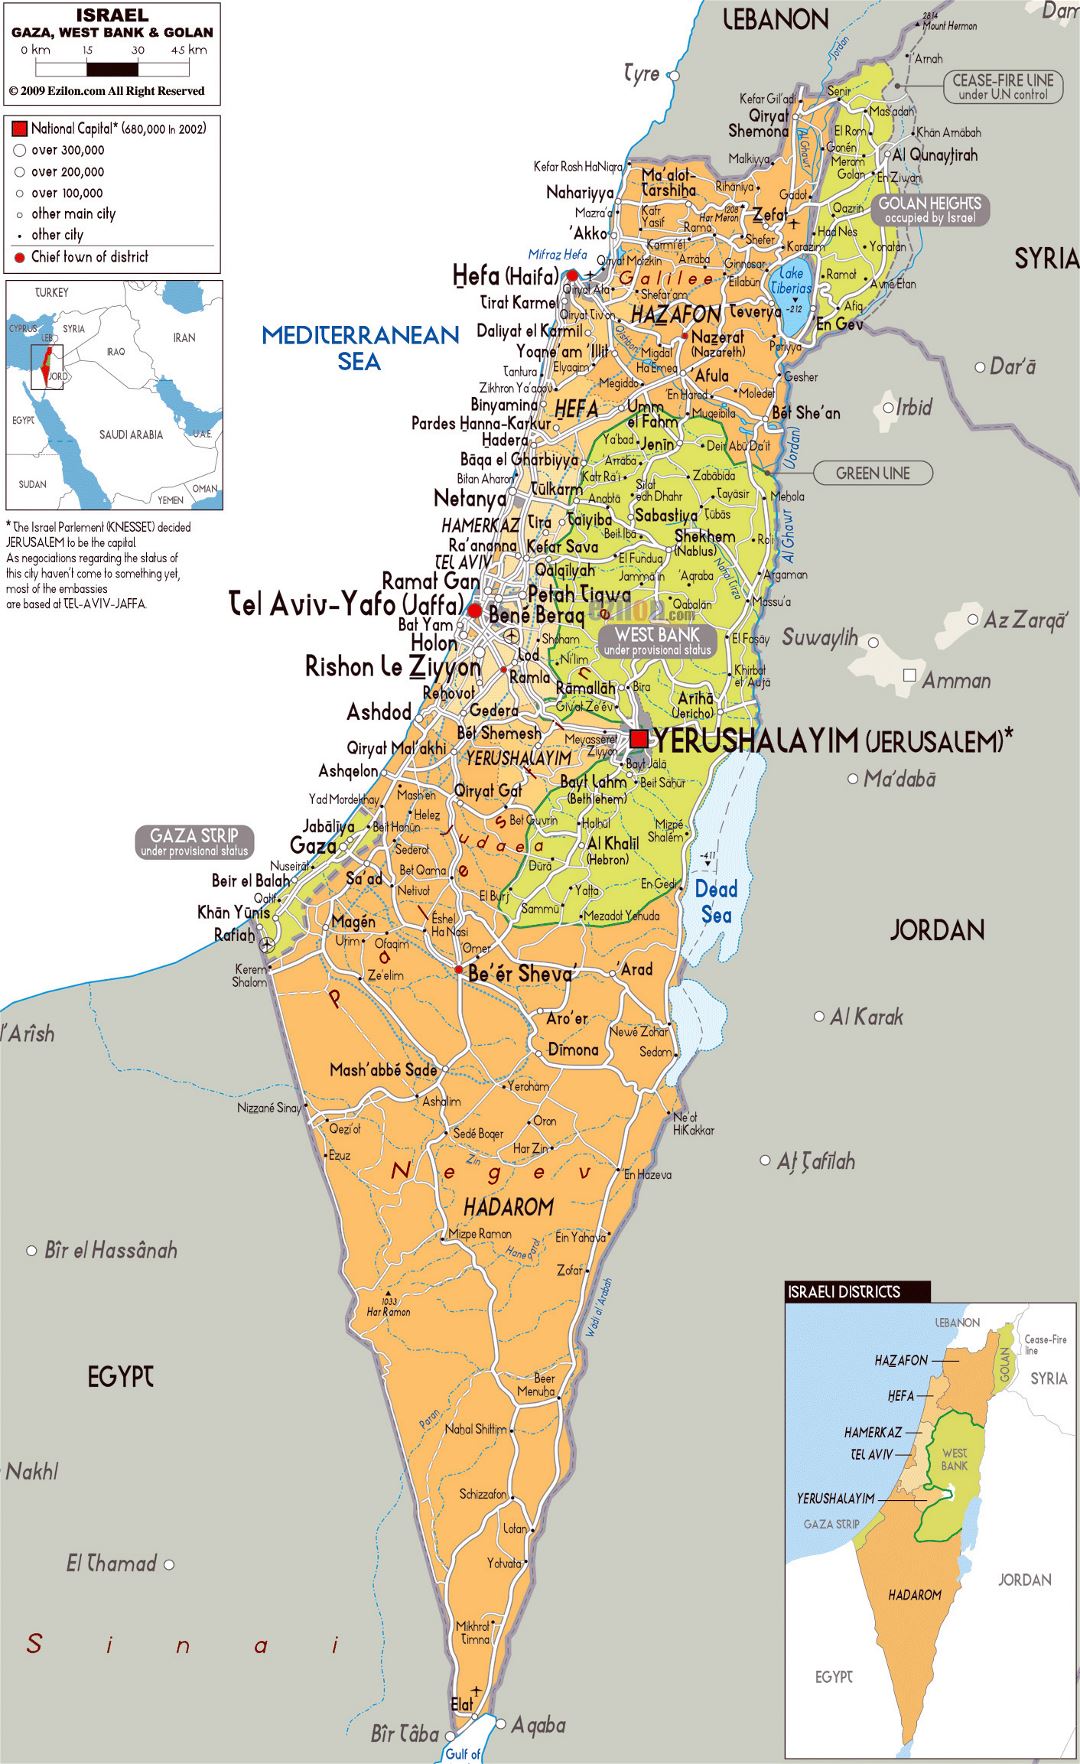 Grande mapa político y administrativo de Israel con carreteras, ciudades y aeropuertos